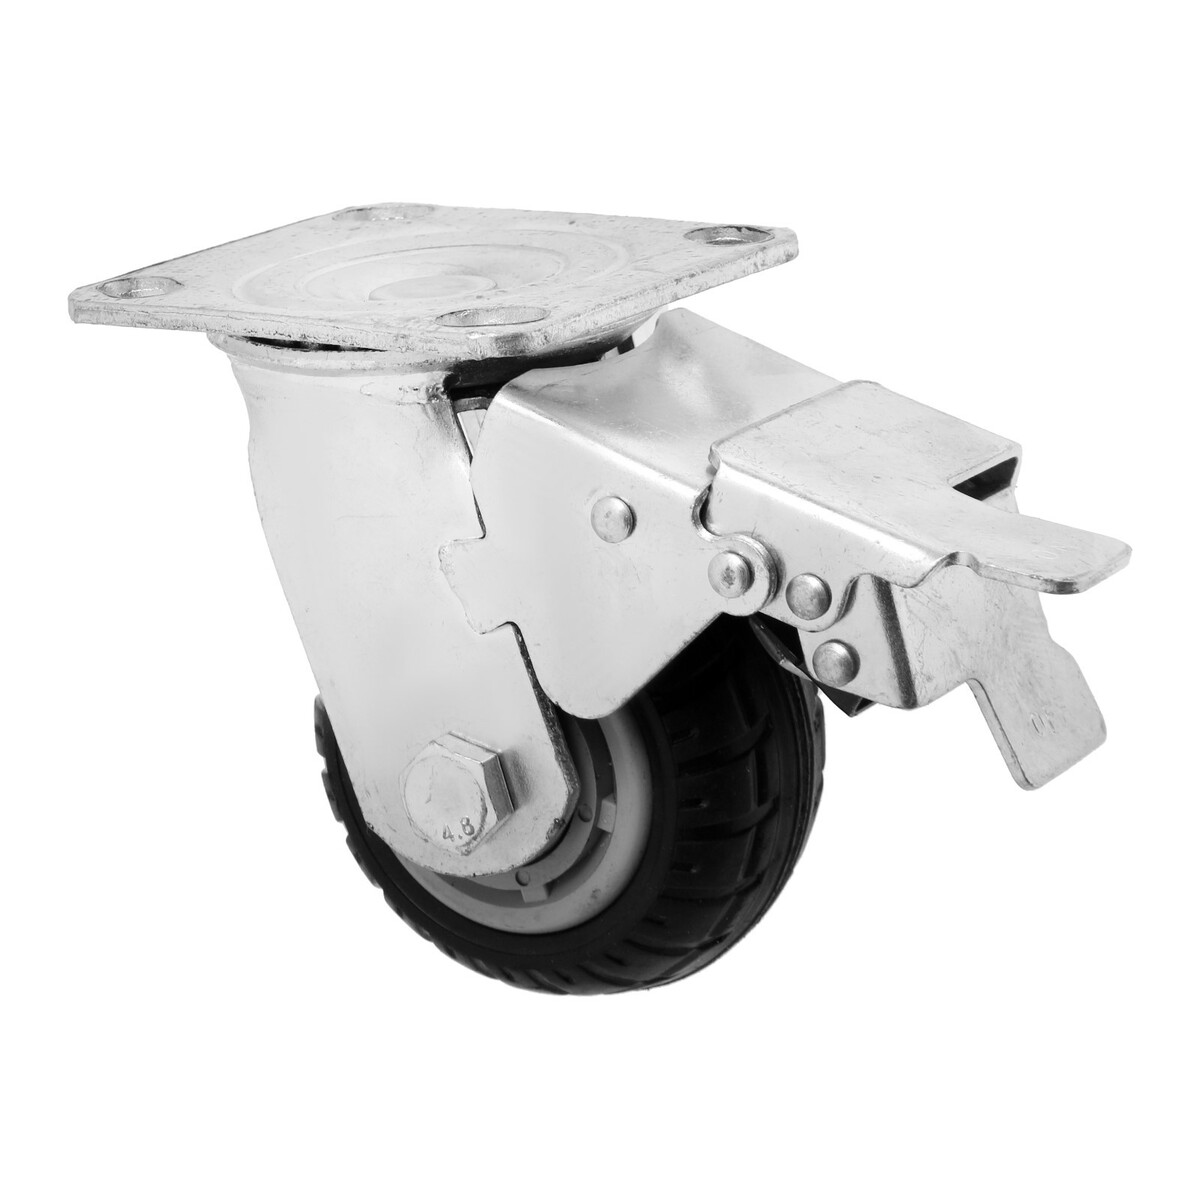 Колесо для транспортных тележек поворотное, d=100, на площадке, со стопором , покрытие резина 9917 колесо промышленное резина pr 100х30х126 мм поворотное мави про